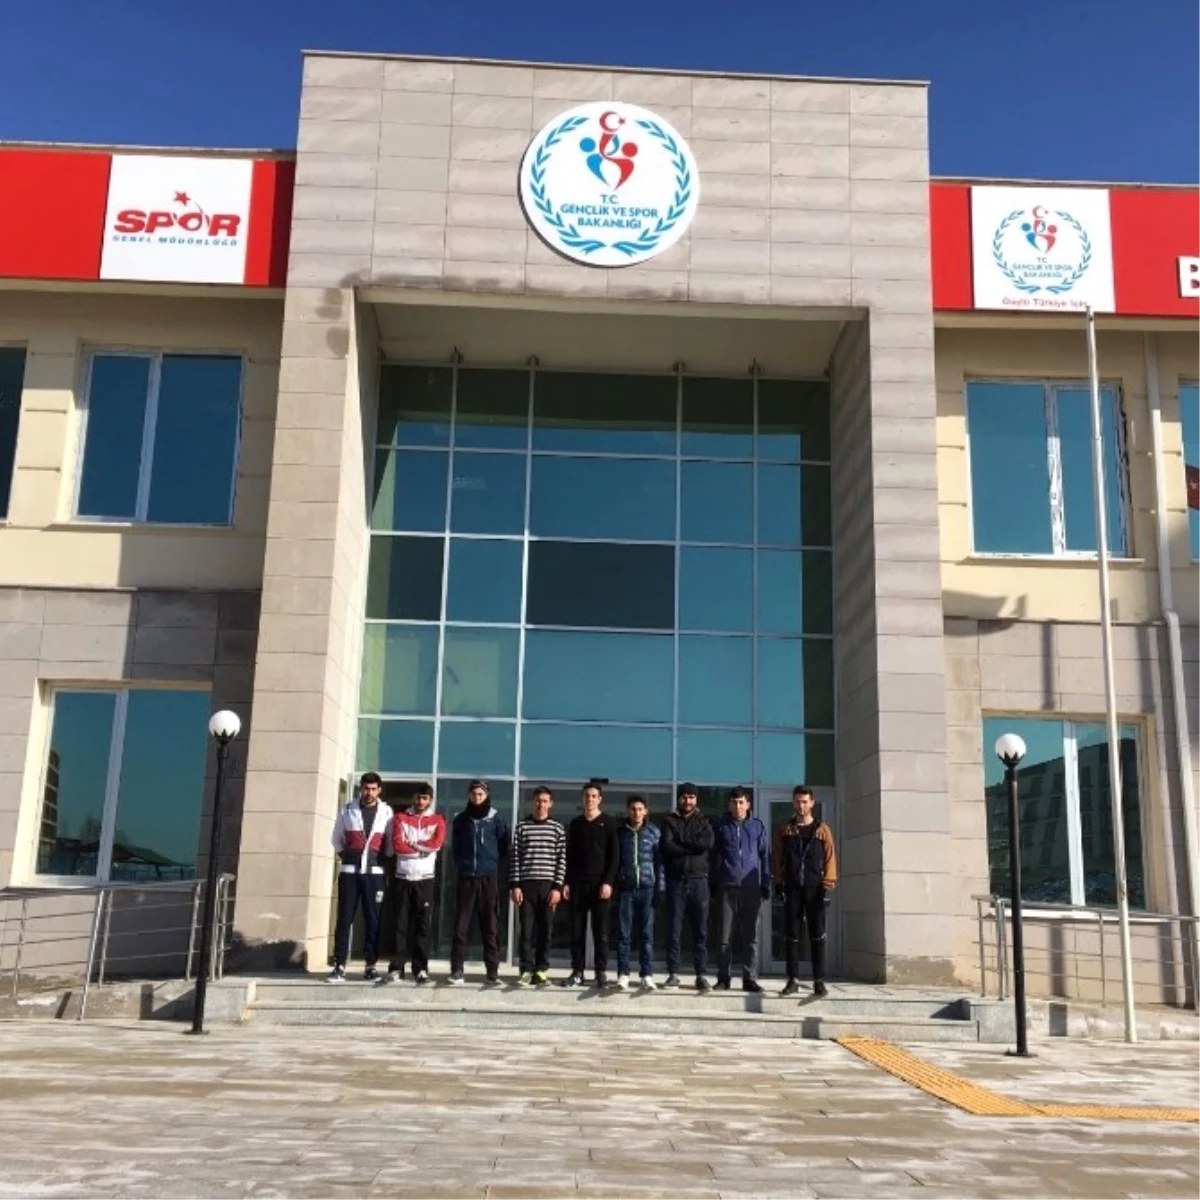 Beyşehir Gençlik Merkezi, Özel Harekatçı Olmak İsteyen Gençlere Kapılarını Açtı